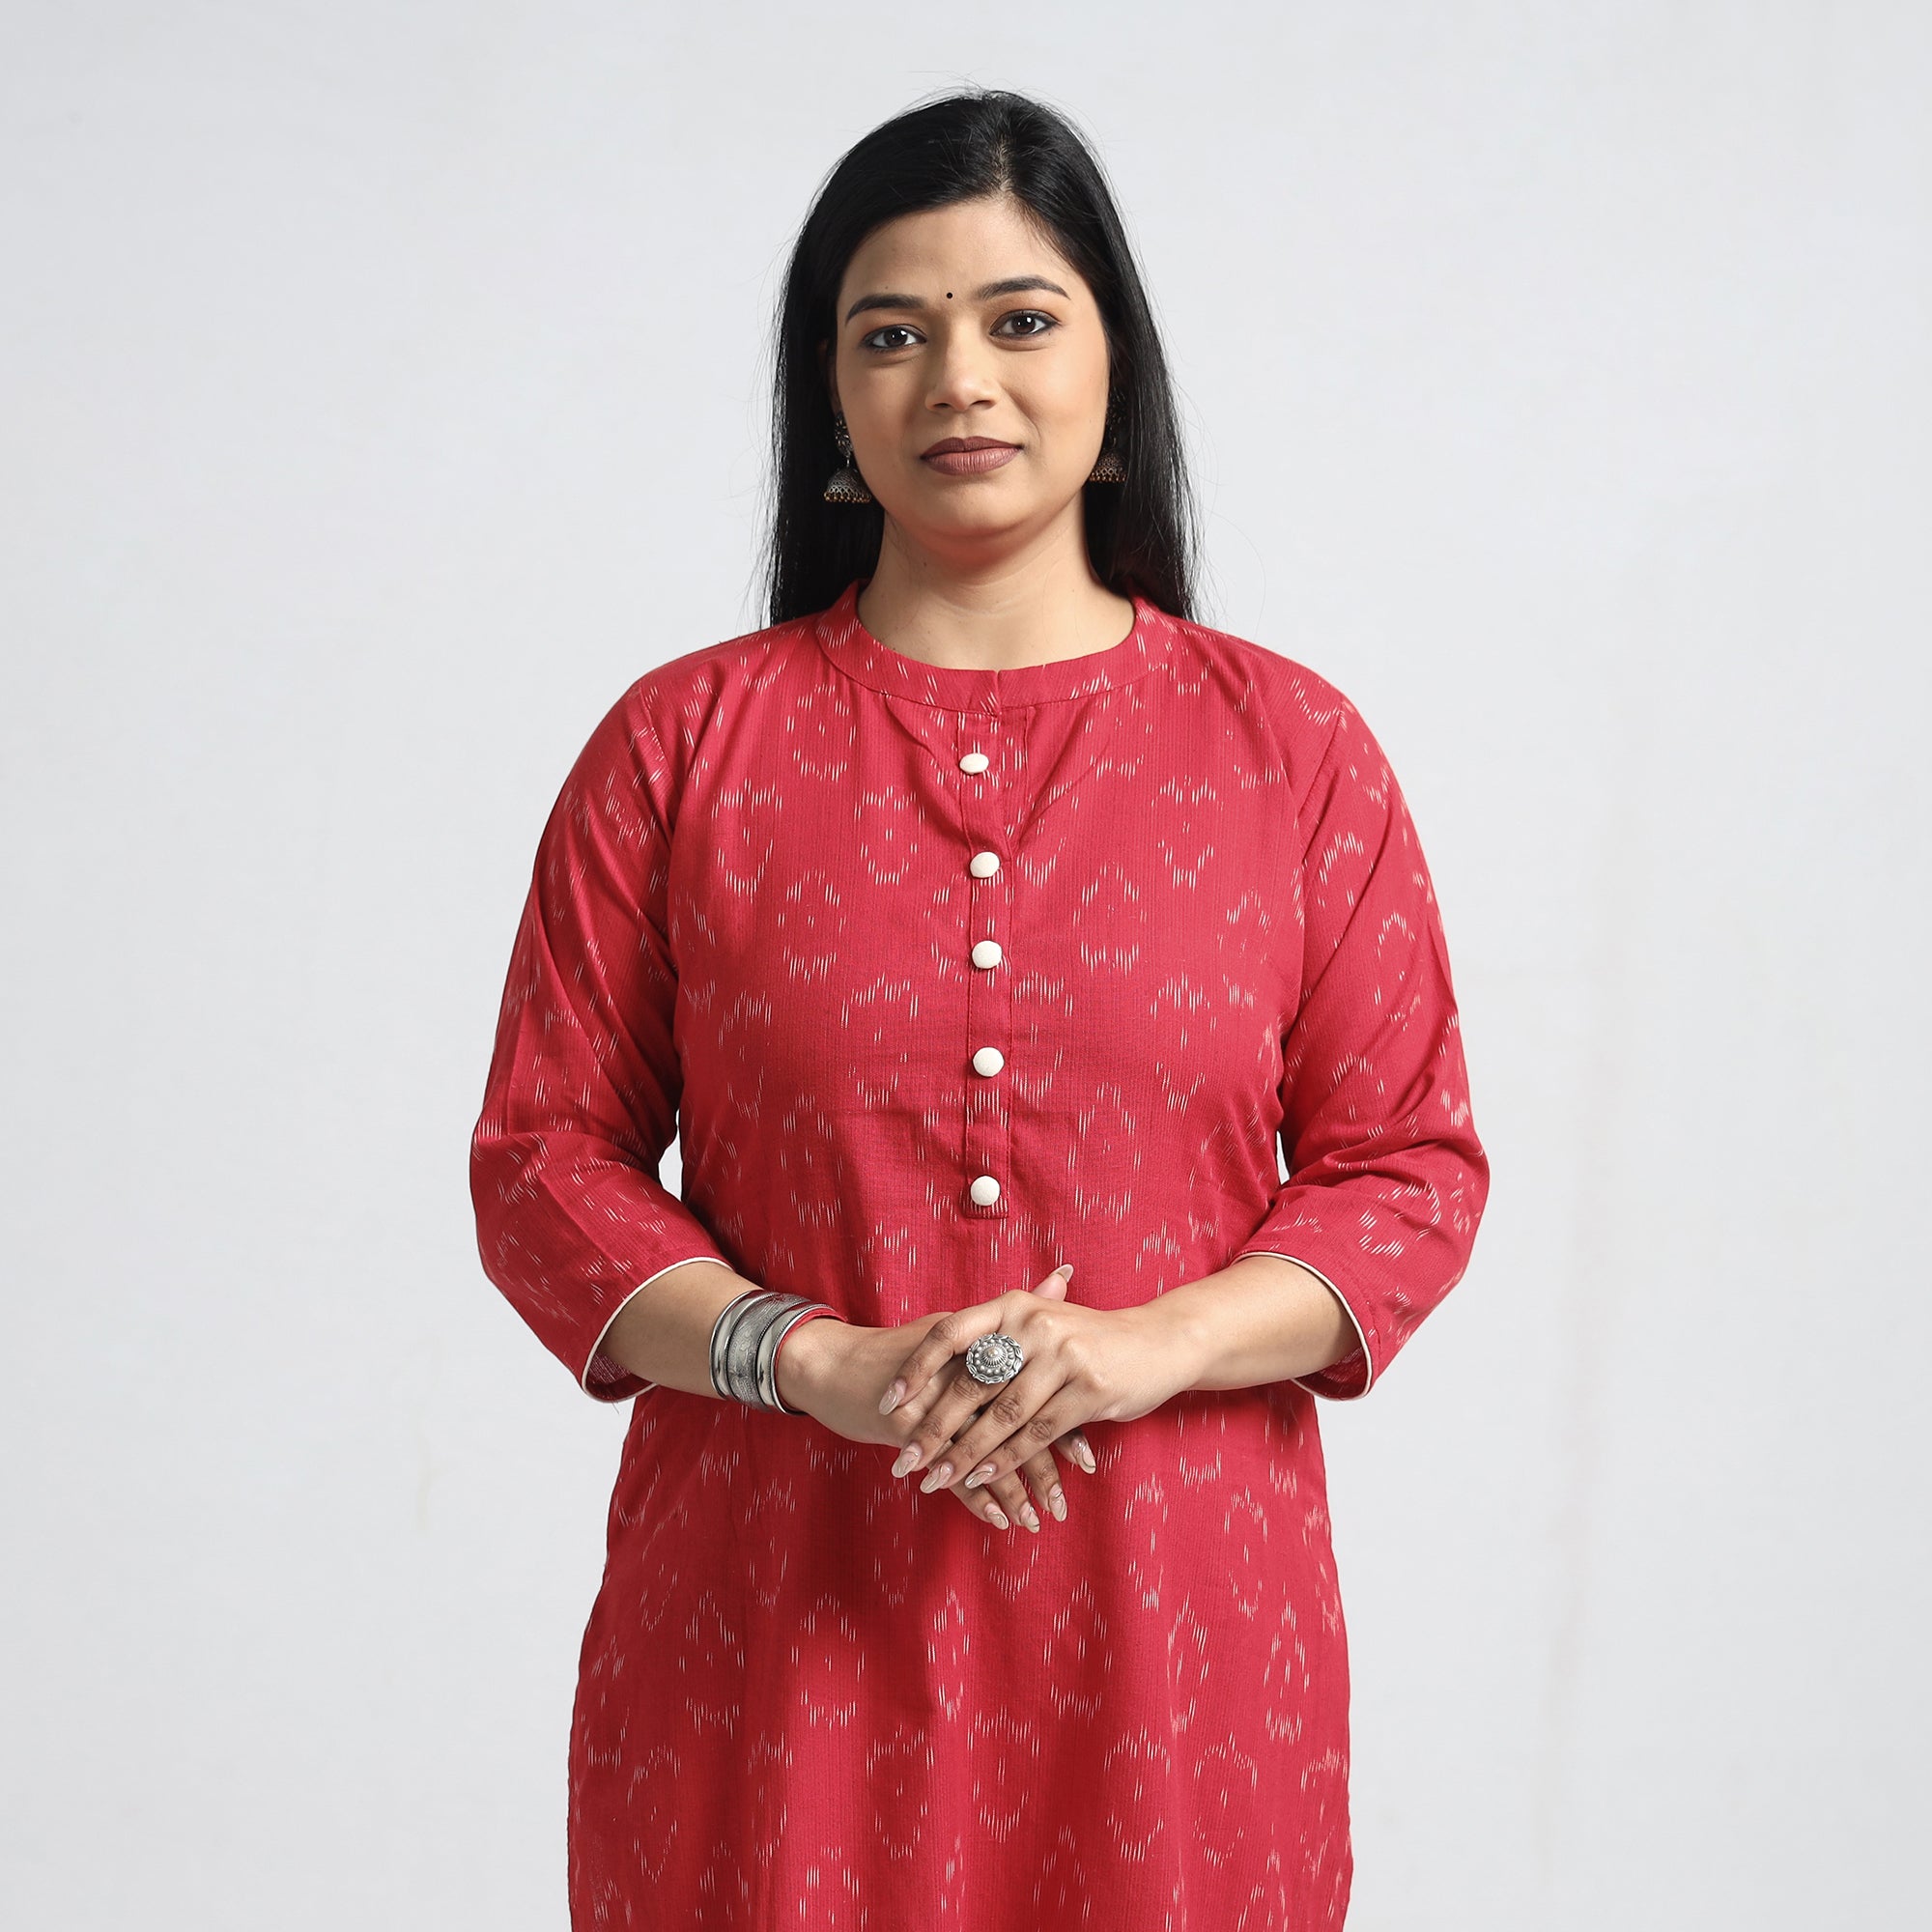 women's cotton kurti indian ikat printed| Alibaba.com